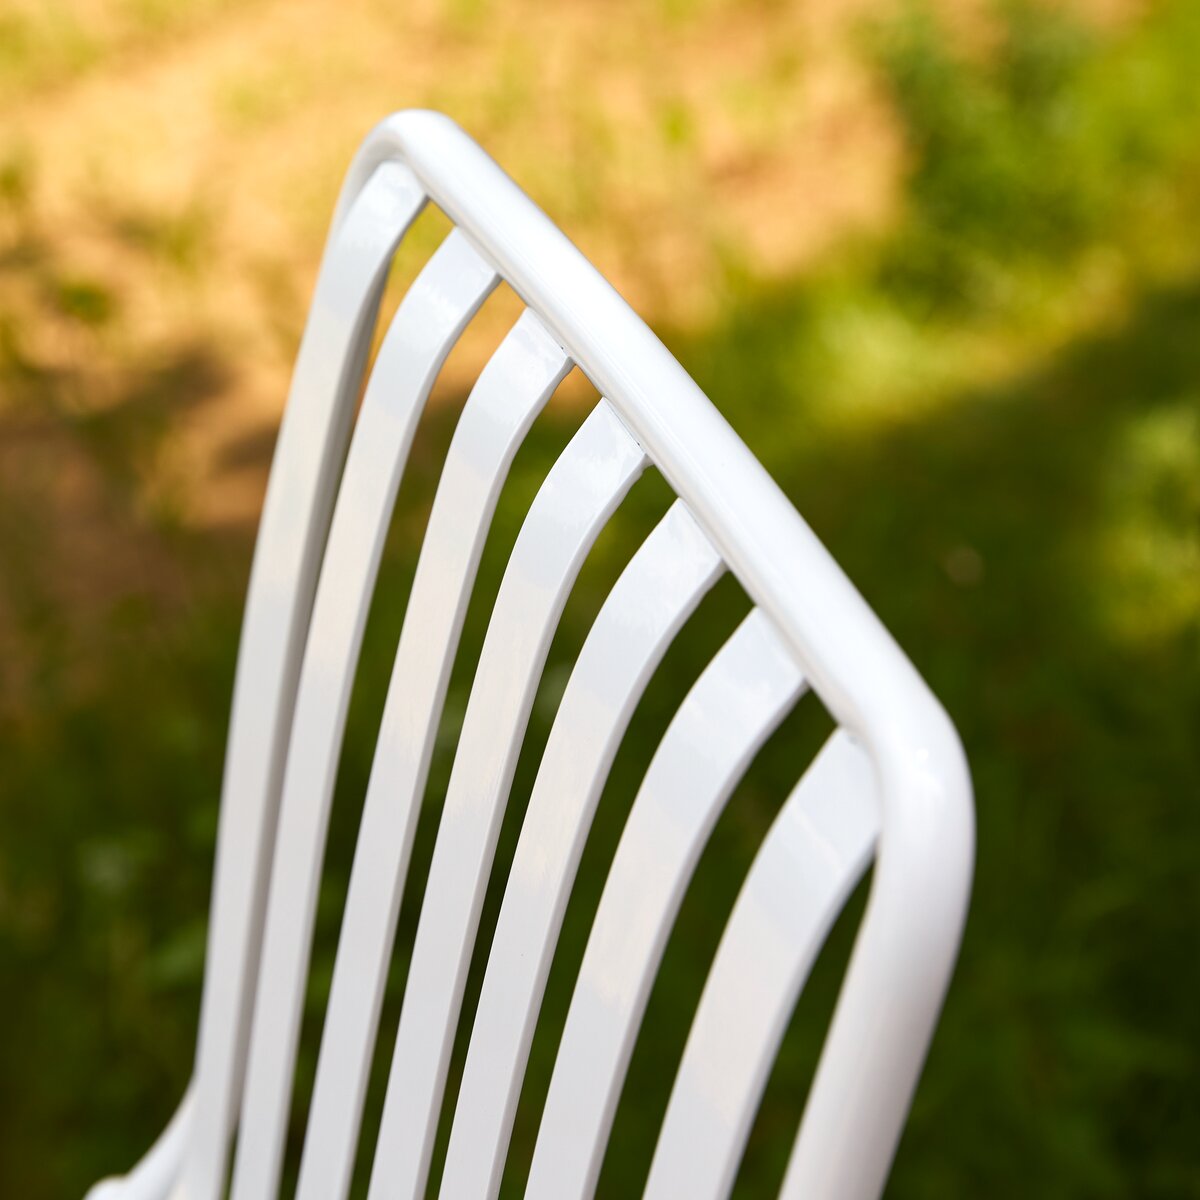 Chaise de jardin en métal blanc - Meuble pour l'extérieur - Tikamoon